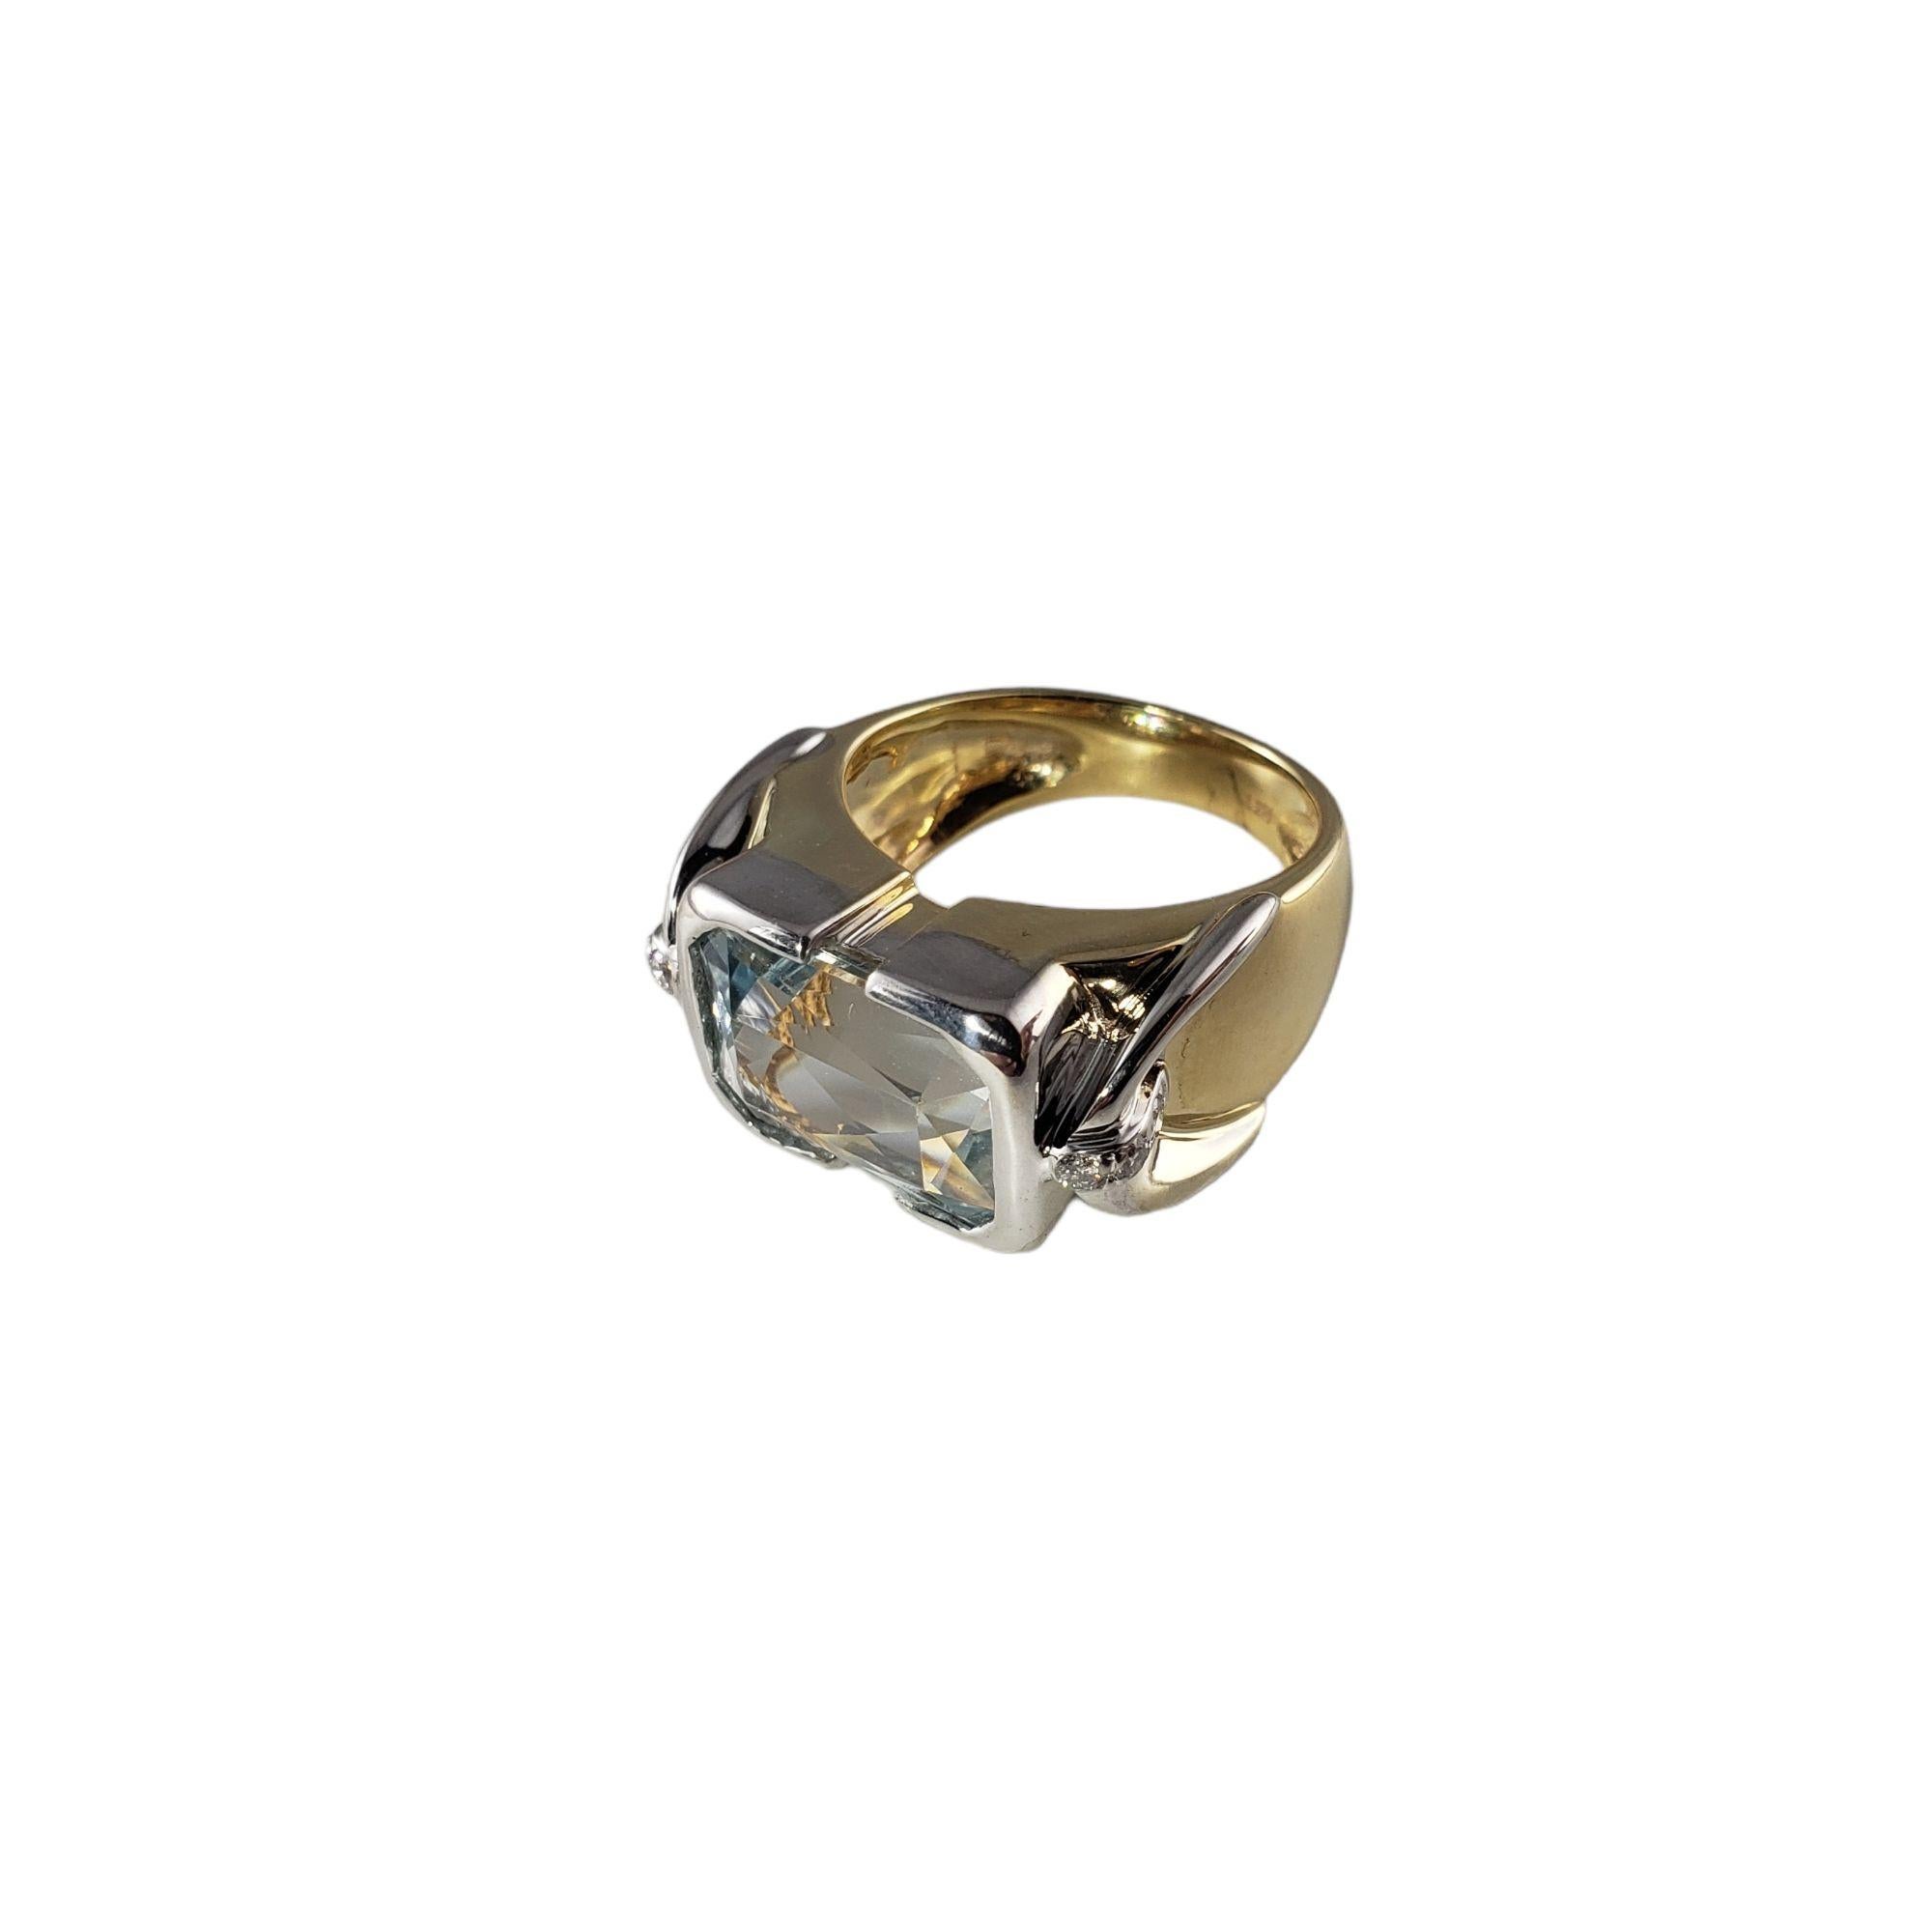 Vintage 14 Karat Gelb- und Weißgold Aquamarin und Diamant Ring Größe 8,25 JAGi zertifiziert-

Dieser atemberaubende Ring besteht aus einem Aquamarin im Brillantschliff (14 mm x 10 mm) und sechs runden Diamanten im Brillantschliff, gefasst in